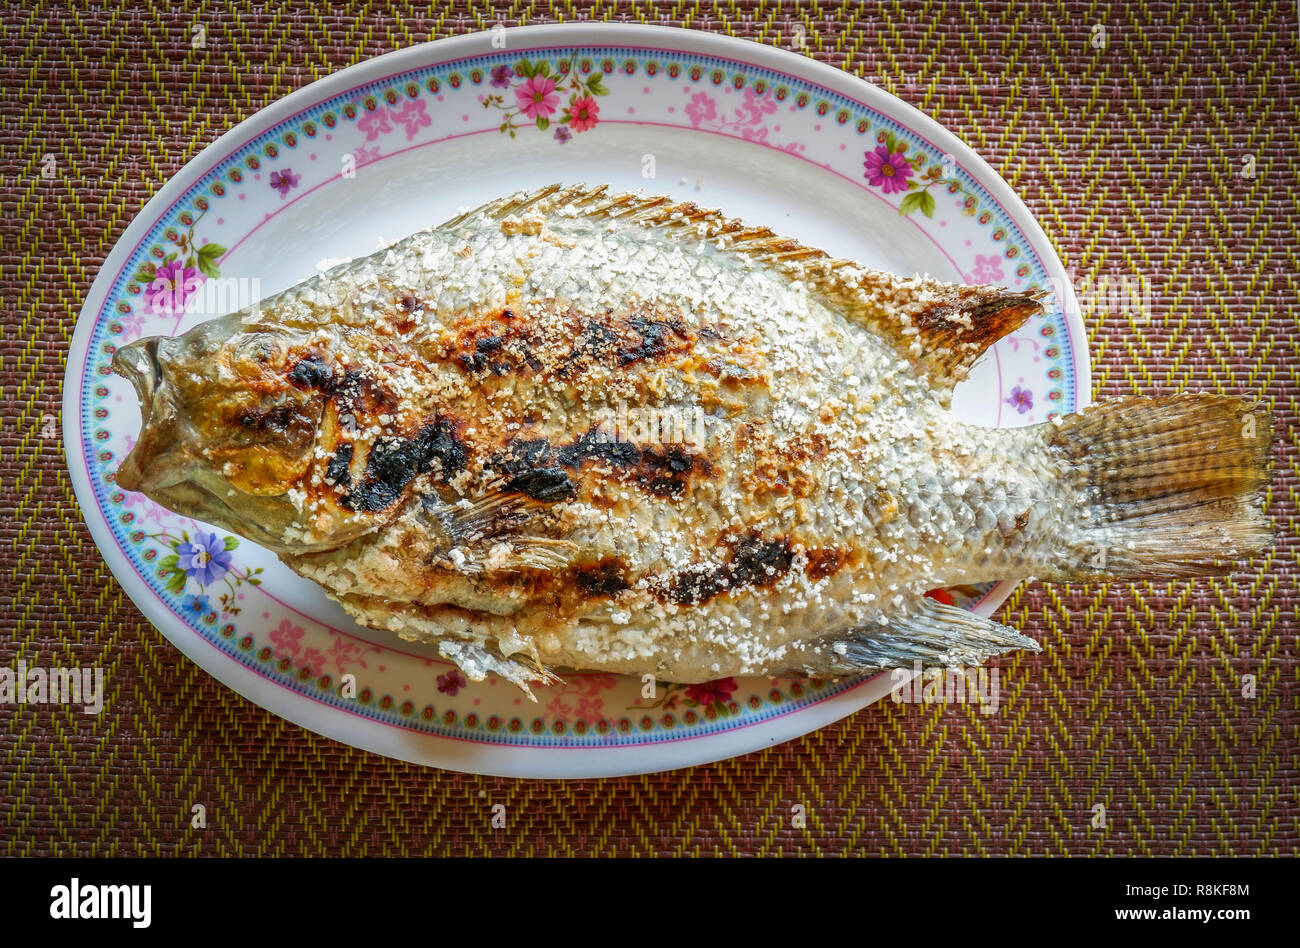 Grillades de poisson Tilapia tilapia grillé à l'/ Sel dans l'alimentation de style asiatique sur platine - Gravure de poisson Tilapia thaïlandais aux herbes brûlées Banque D'Images